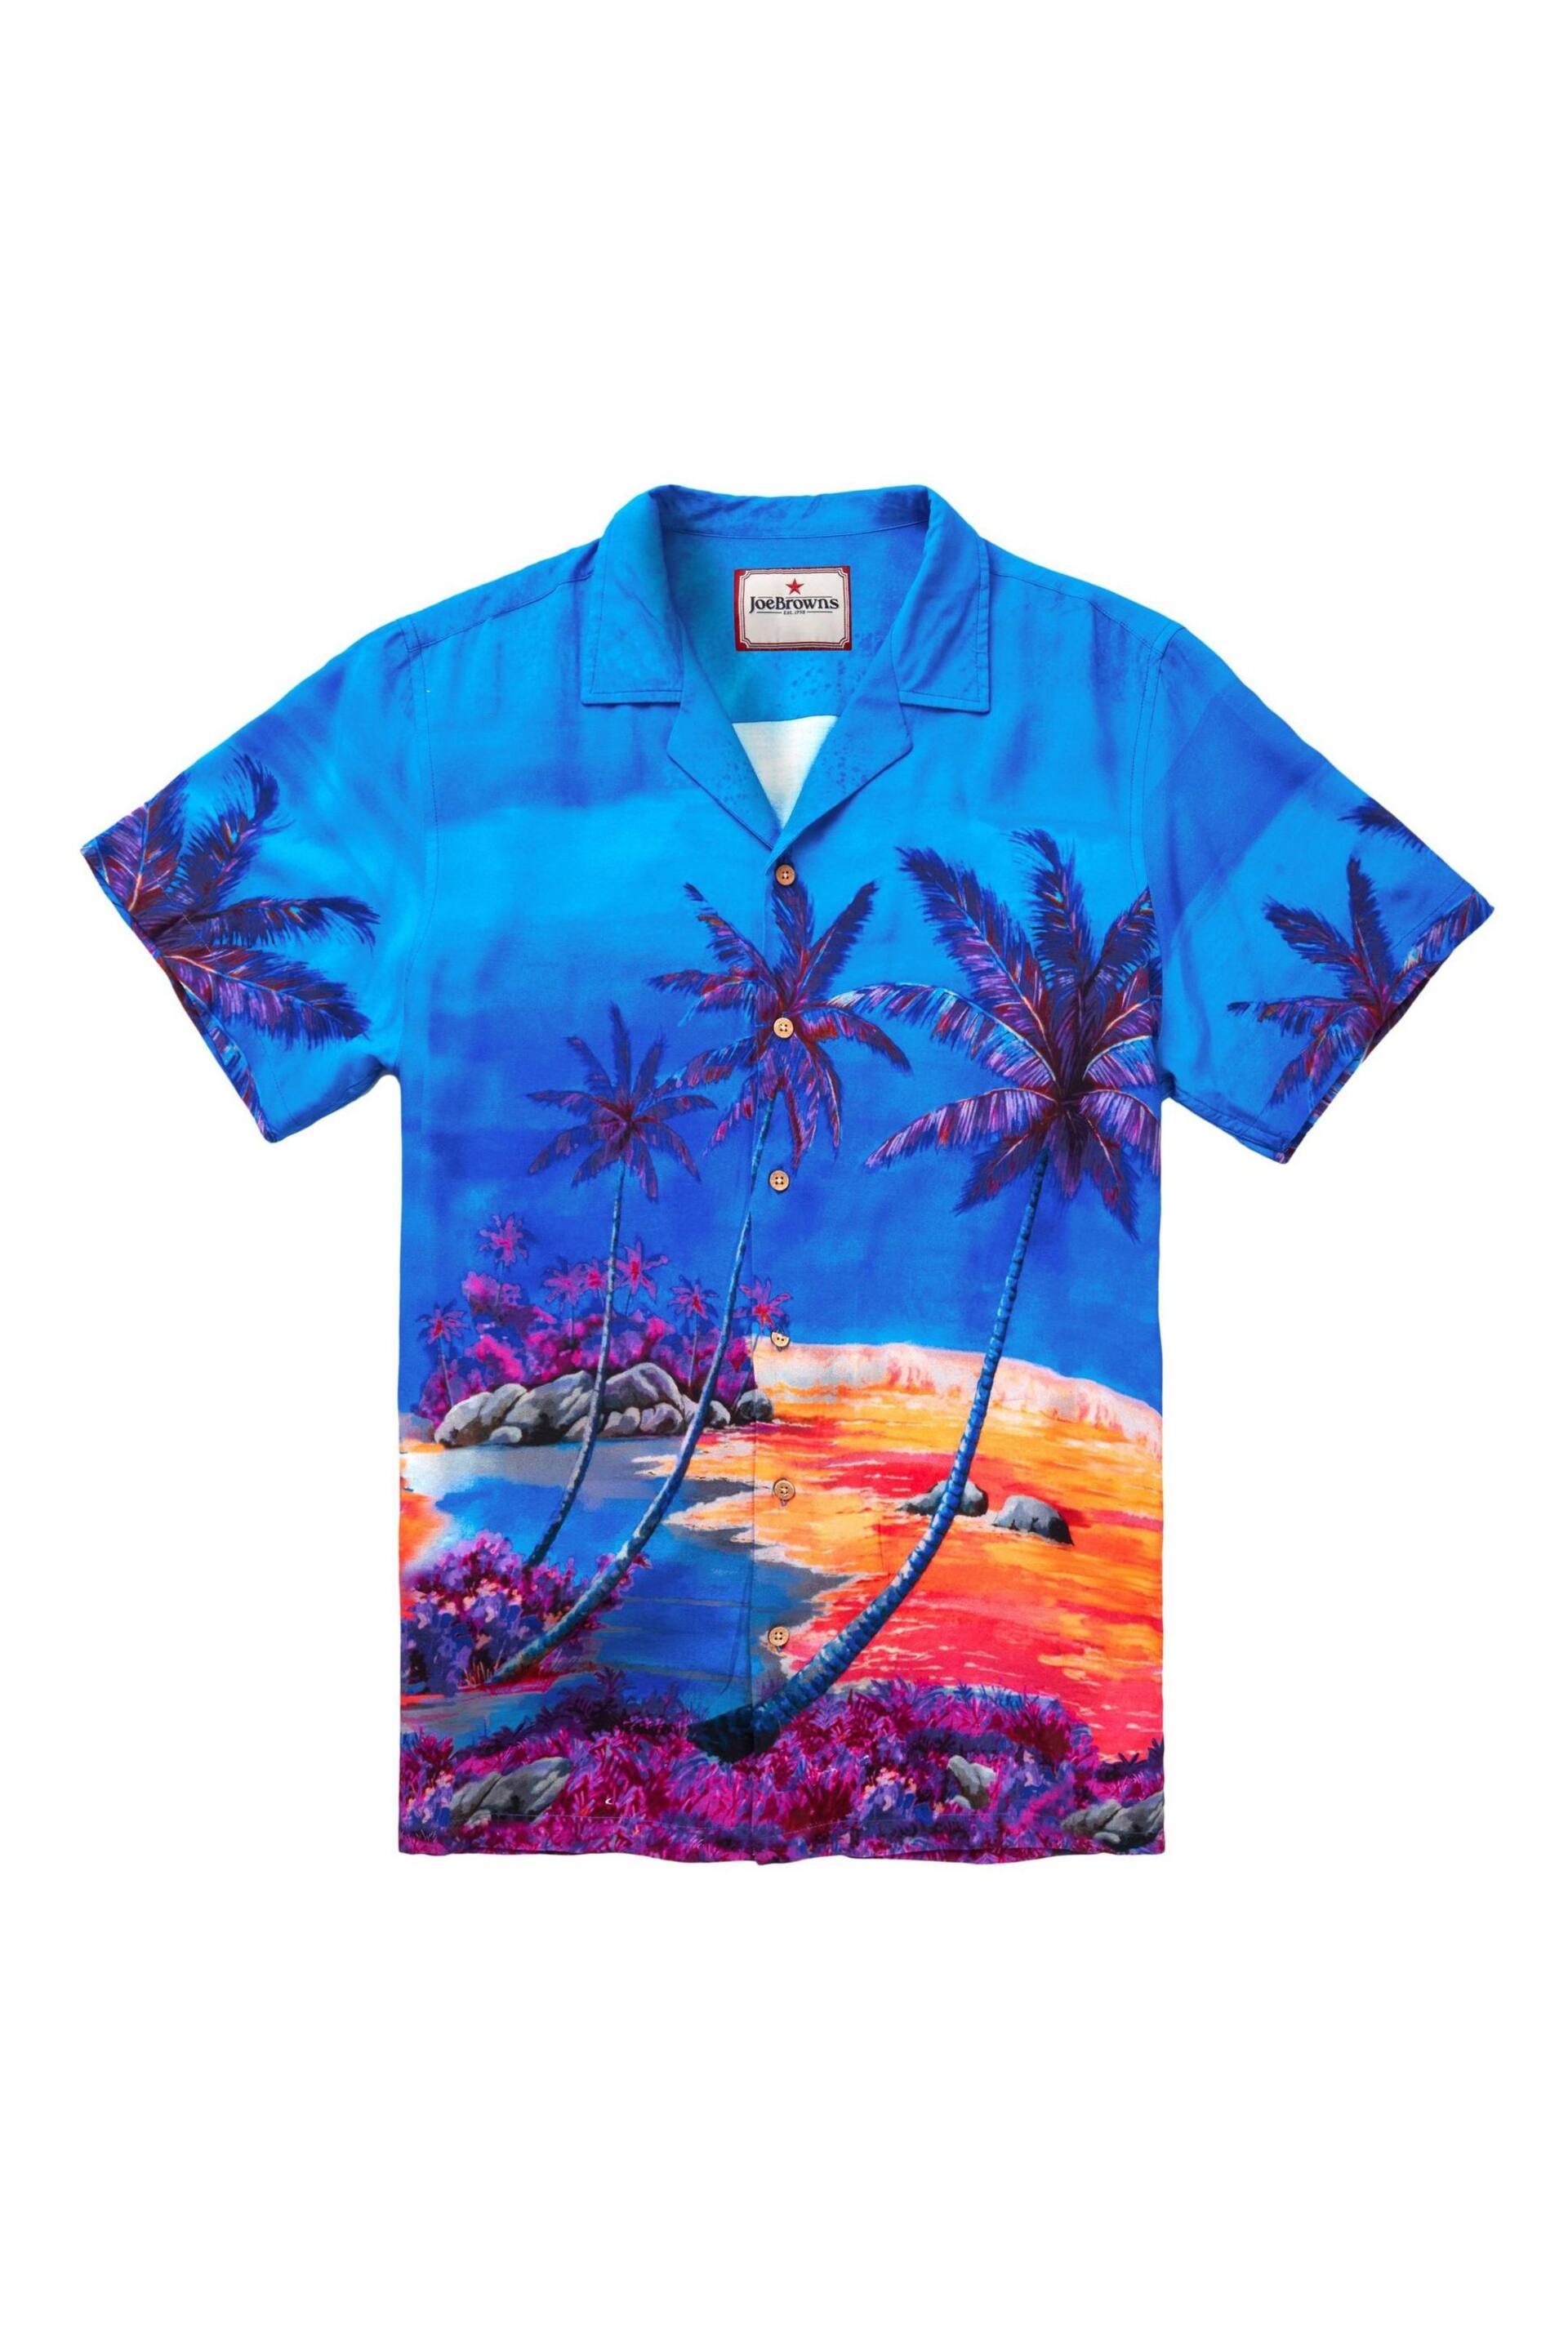 Joe Browns Blue Hawaiian Palm Sunset Short Sleeve Open Flat Collar Shirt - Image 5 of 5